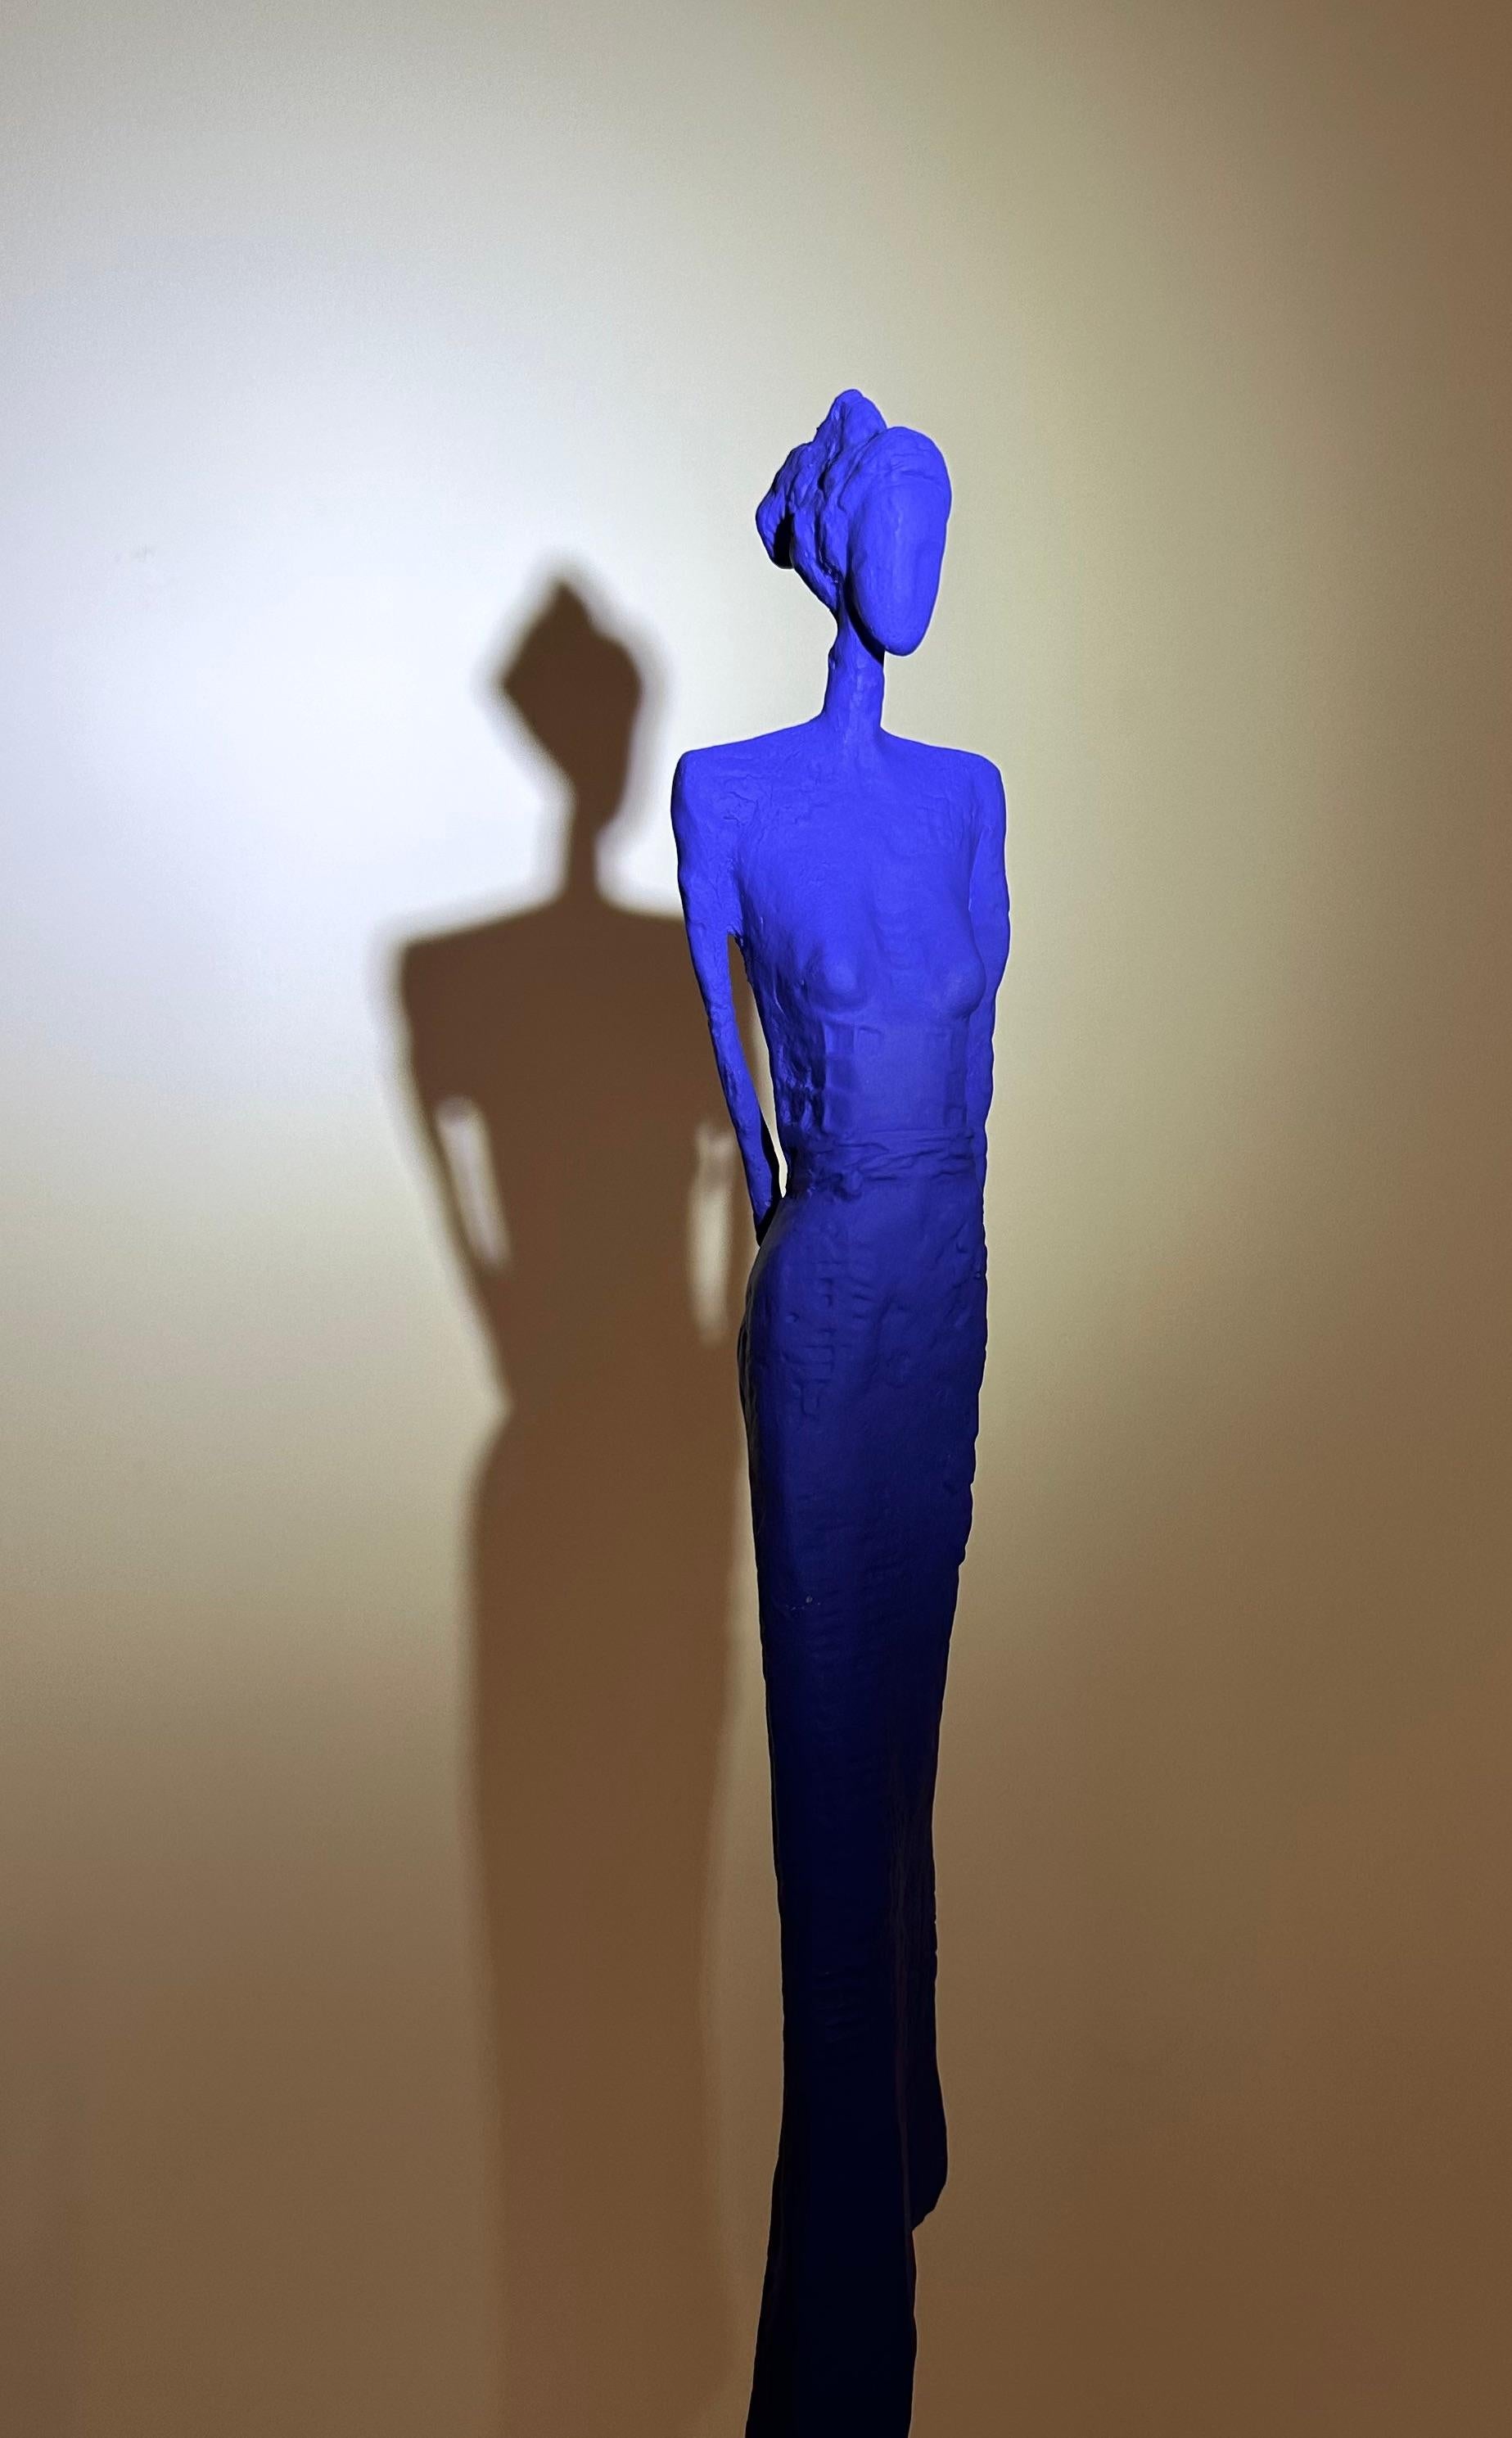 Calypso (Mini Blue) - Contemporary Sculpture by Anne de Villeméjane